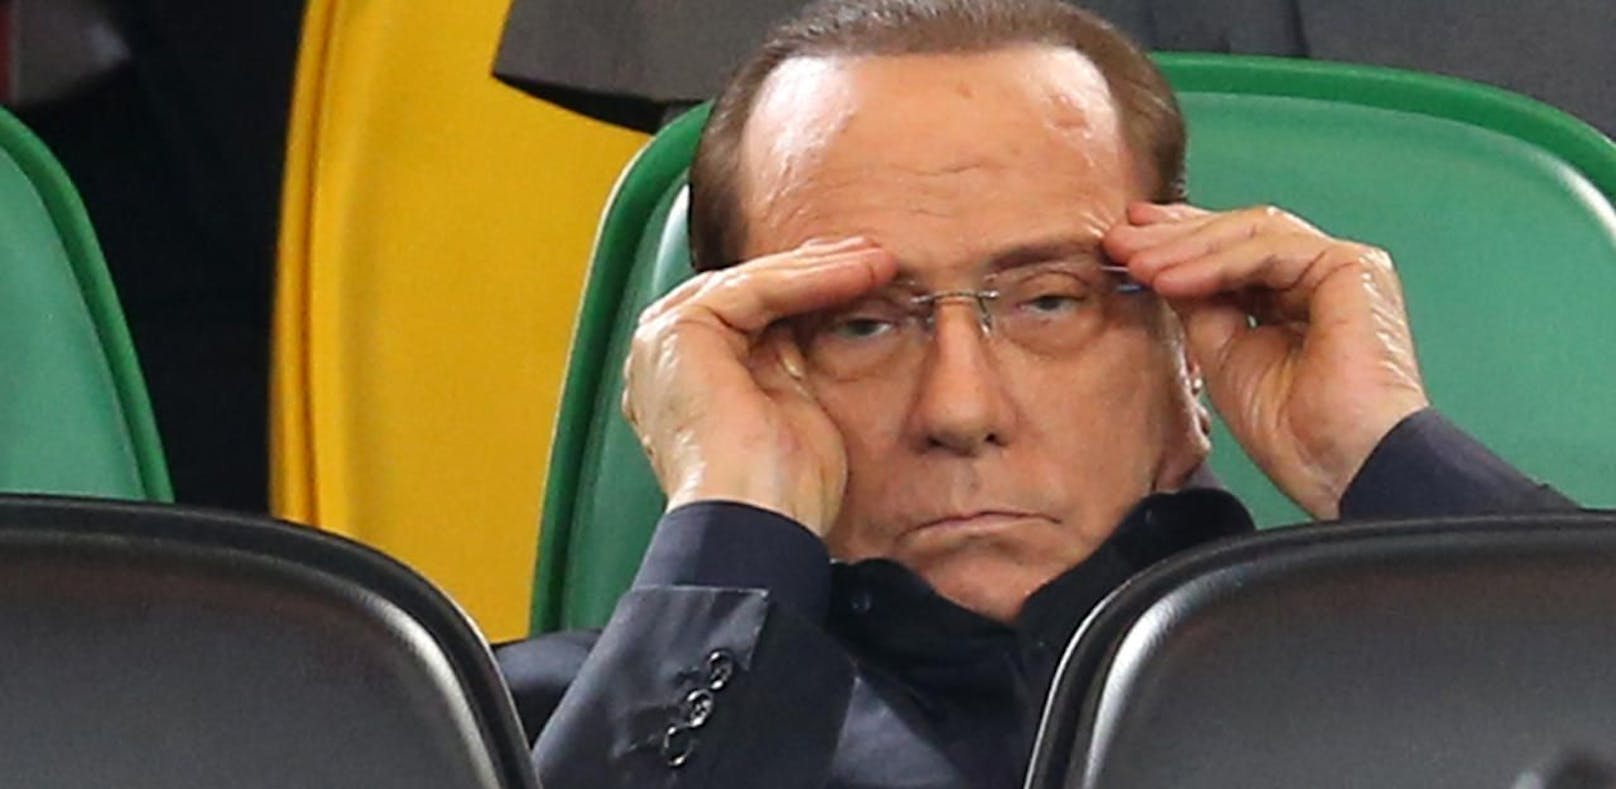 Ex-Frau ließ Berlusconi das Bankkonto sperren